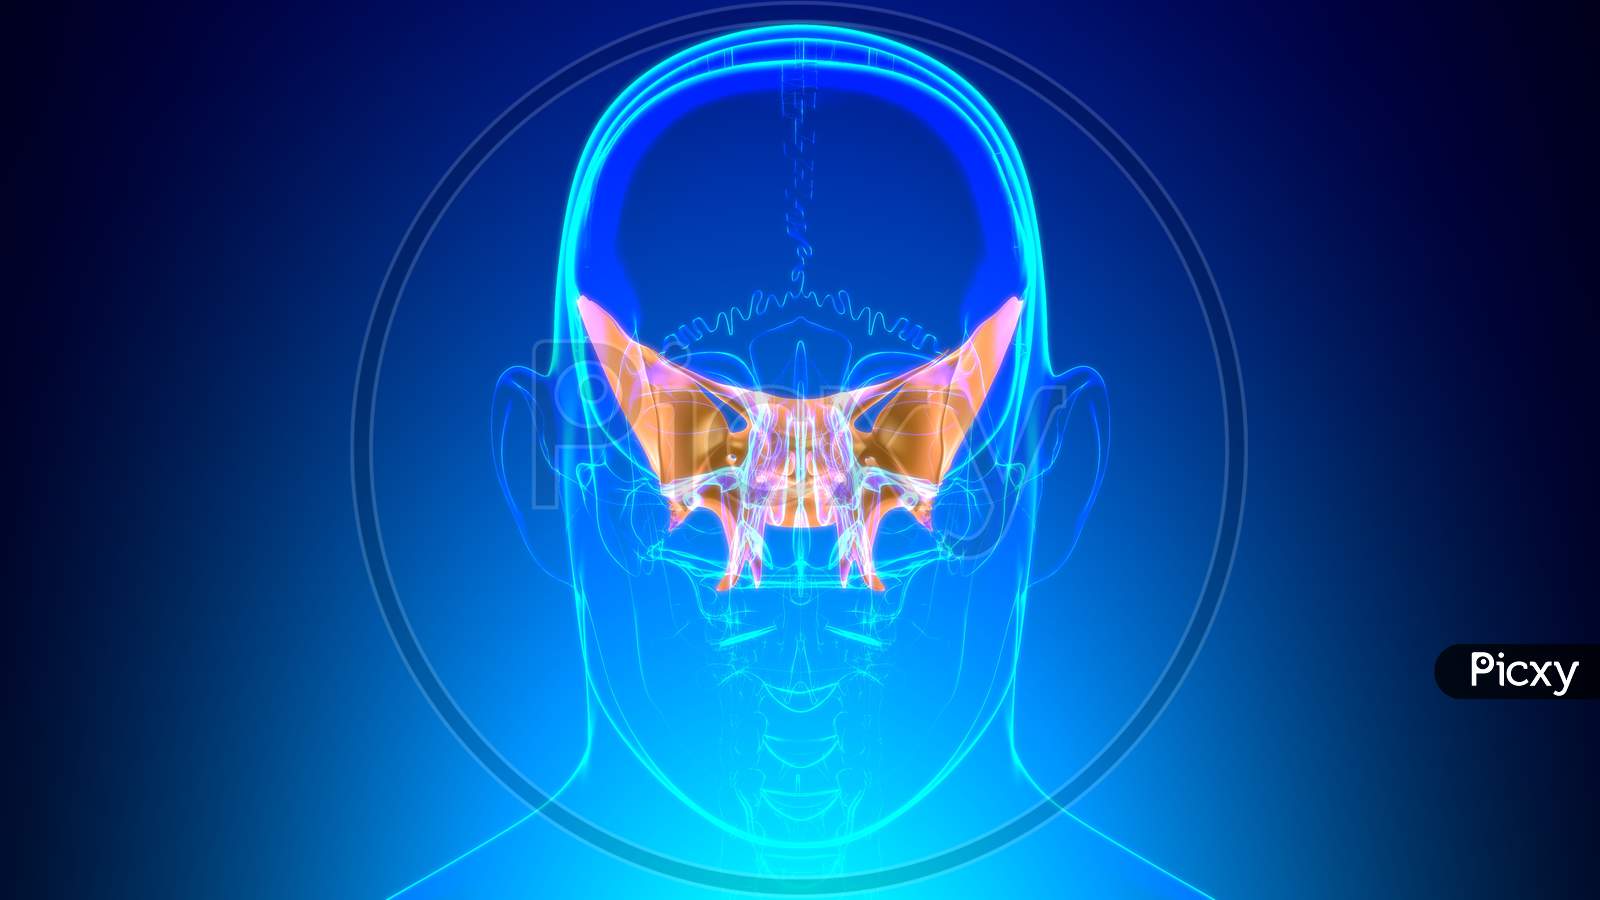 Human Skeleton Skull Sphenoid Bone Anatomy For Medical Concept